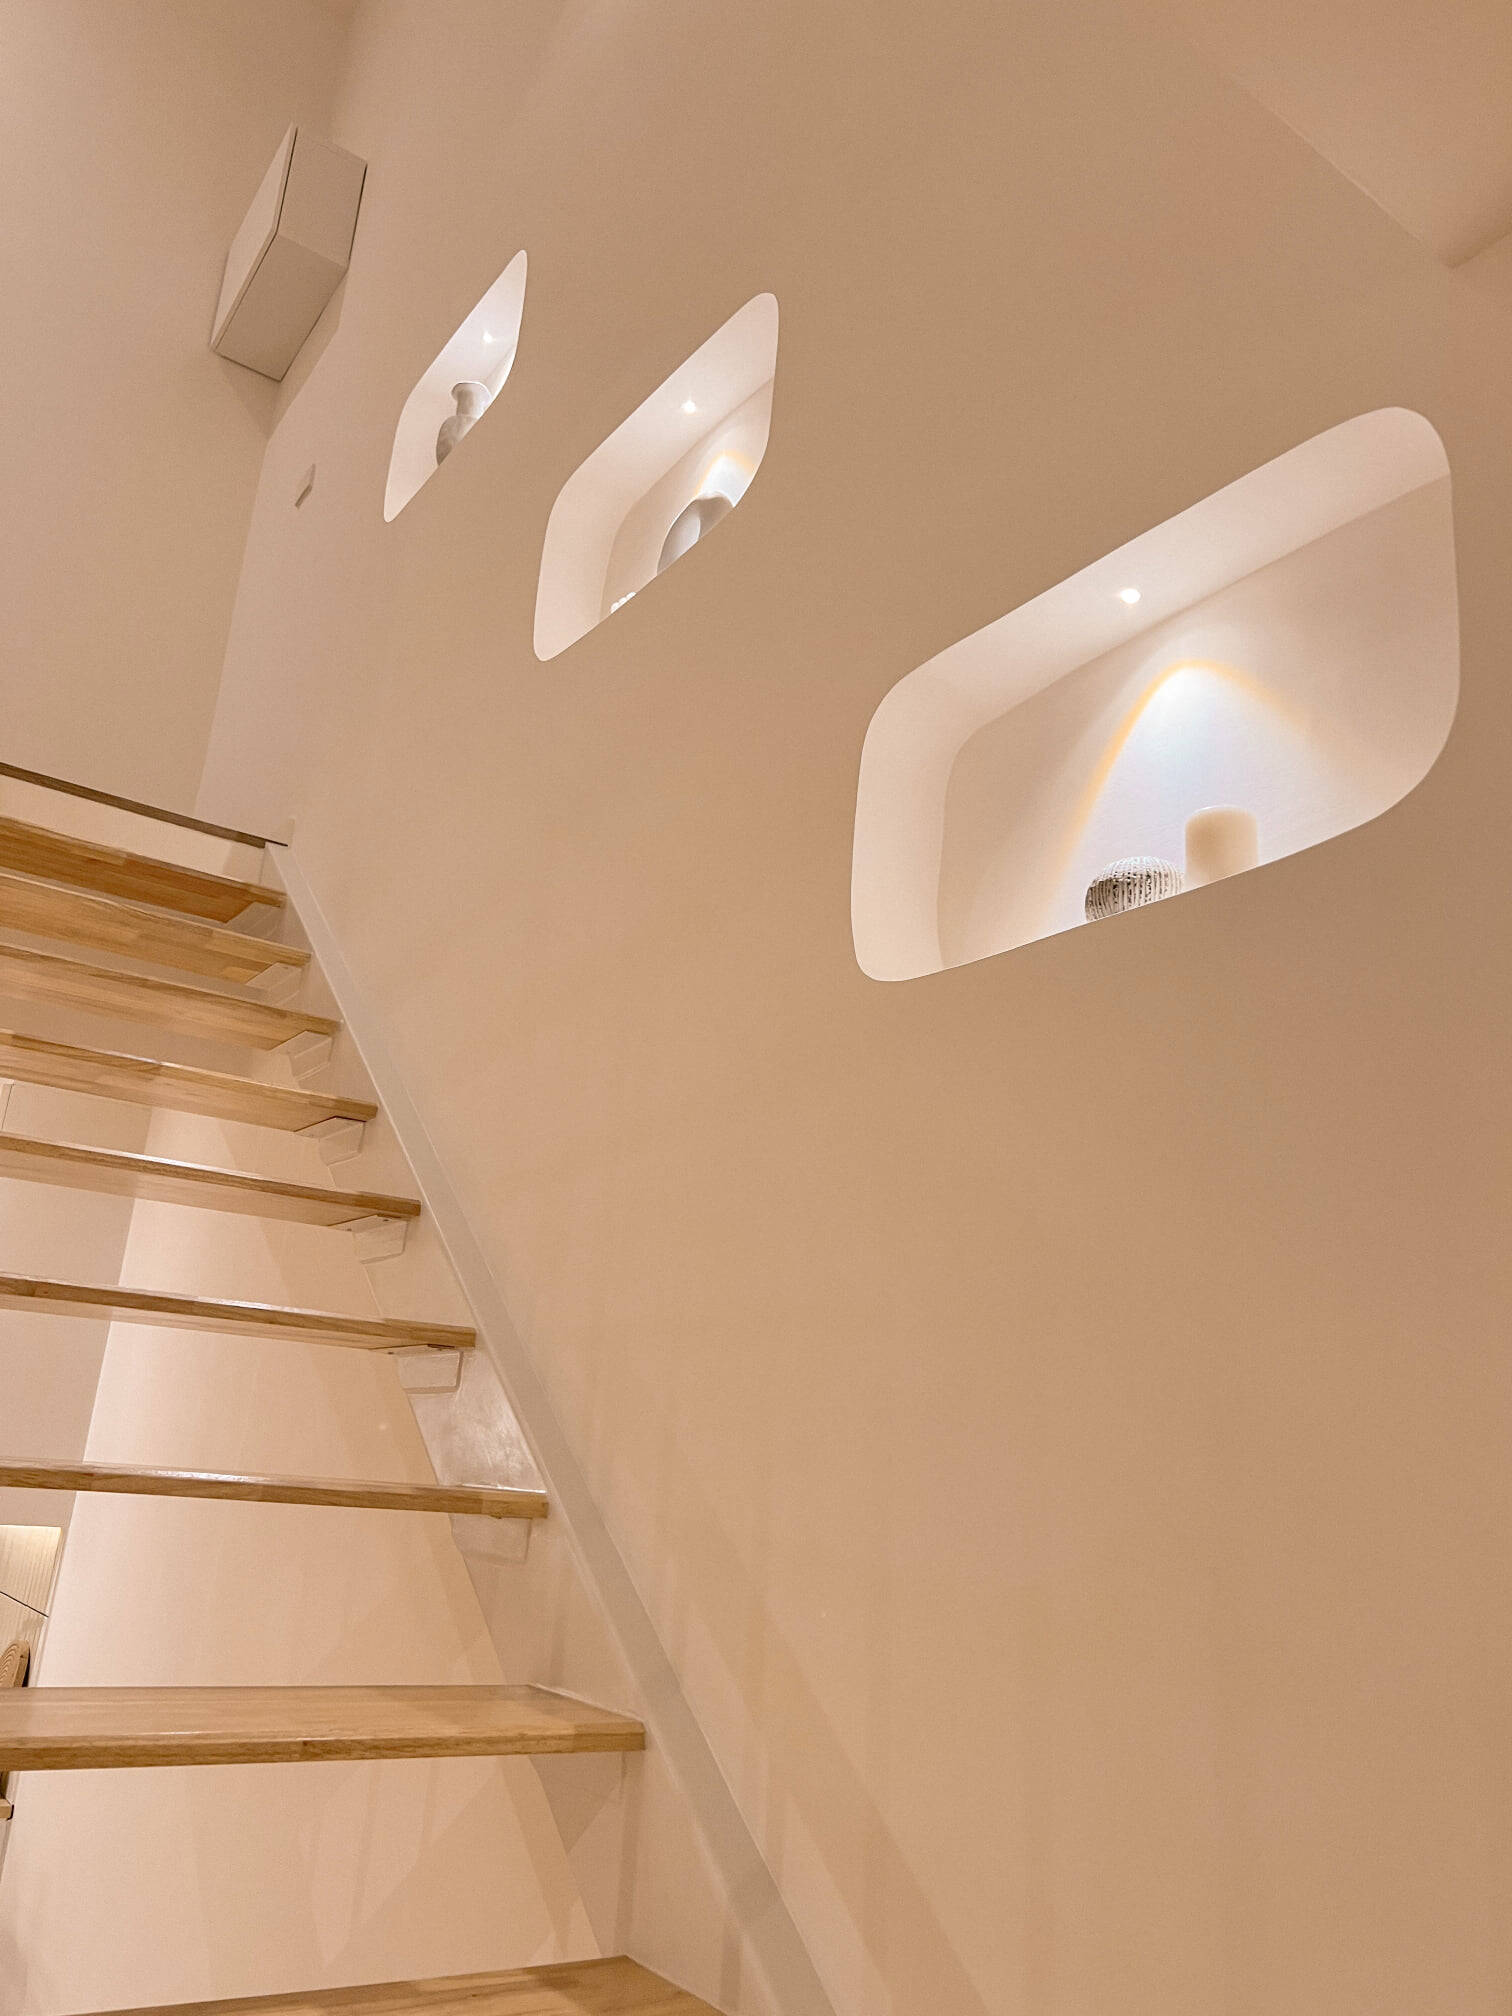 Nhà 2 tầng 5,5x20 có 3 phòng ngủ, thiết kế phong cách Muji mang đến sự mới mẻ, trẻ trung và ấm áp